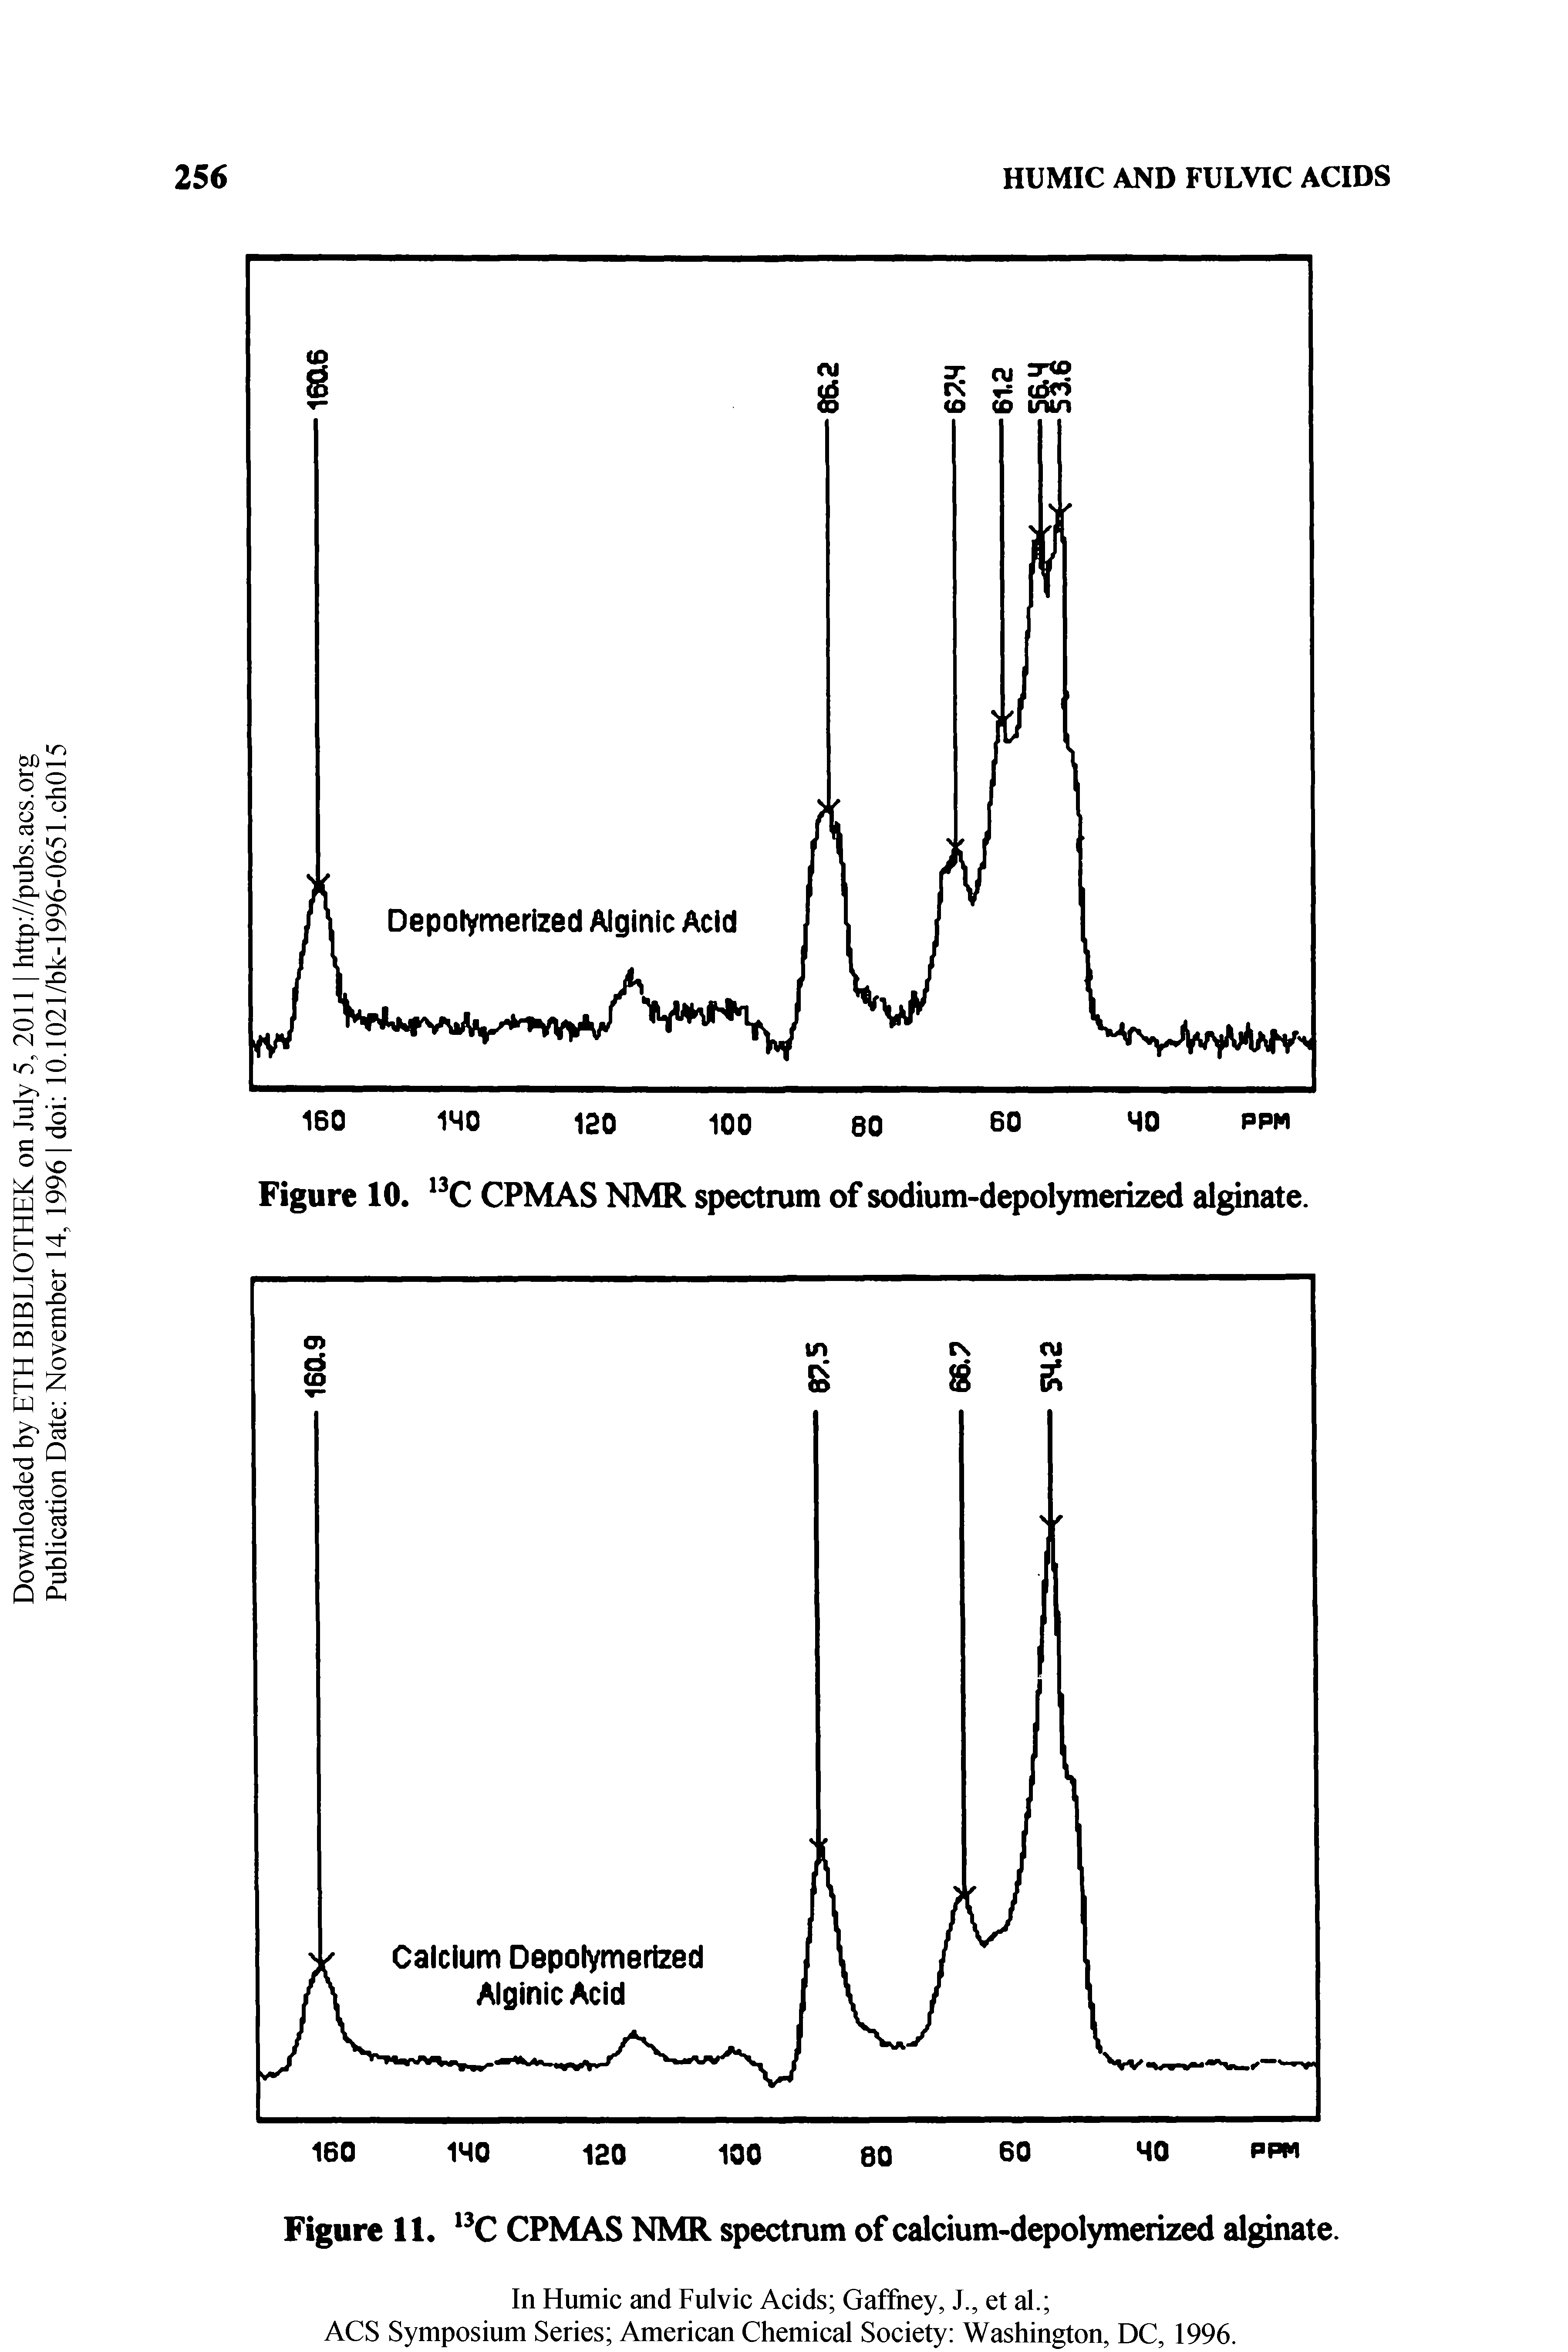 Figure 11, CPMAS NMR spectrum of calcium-depolymerized alginate.